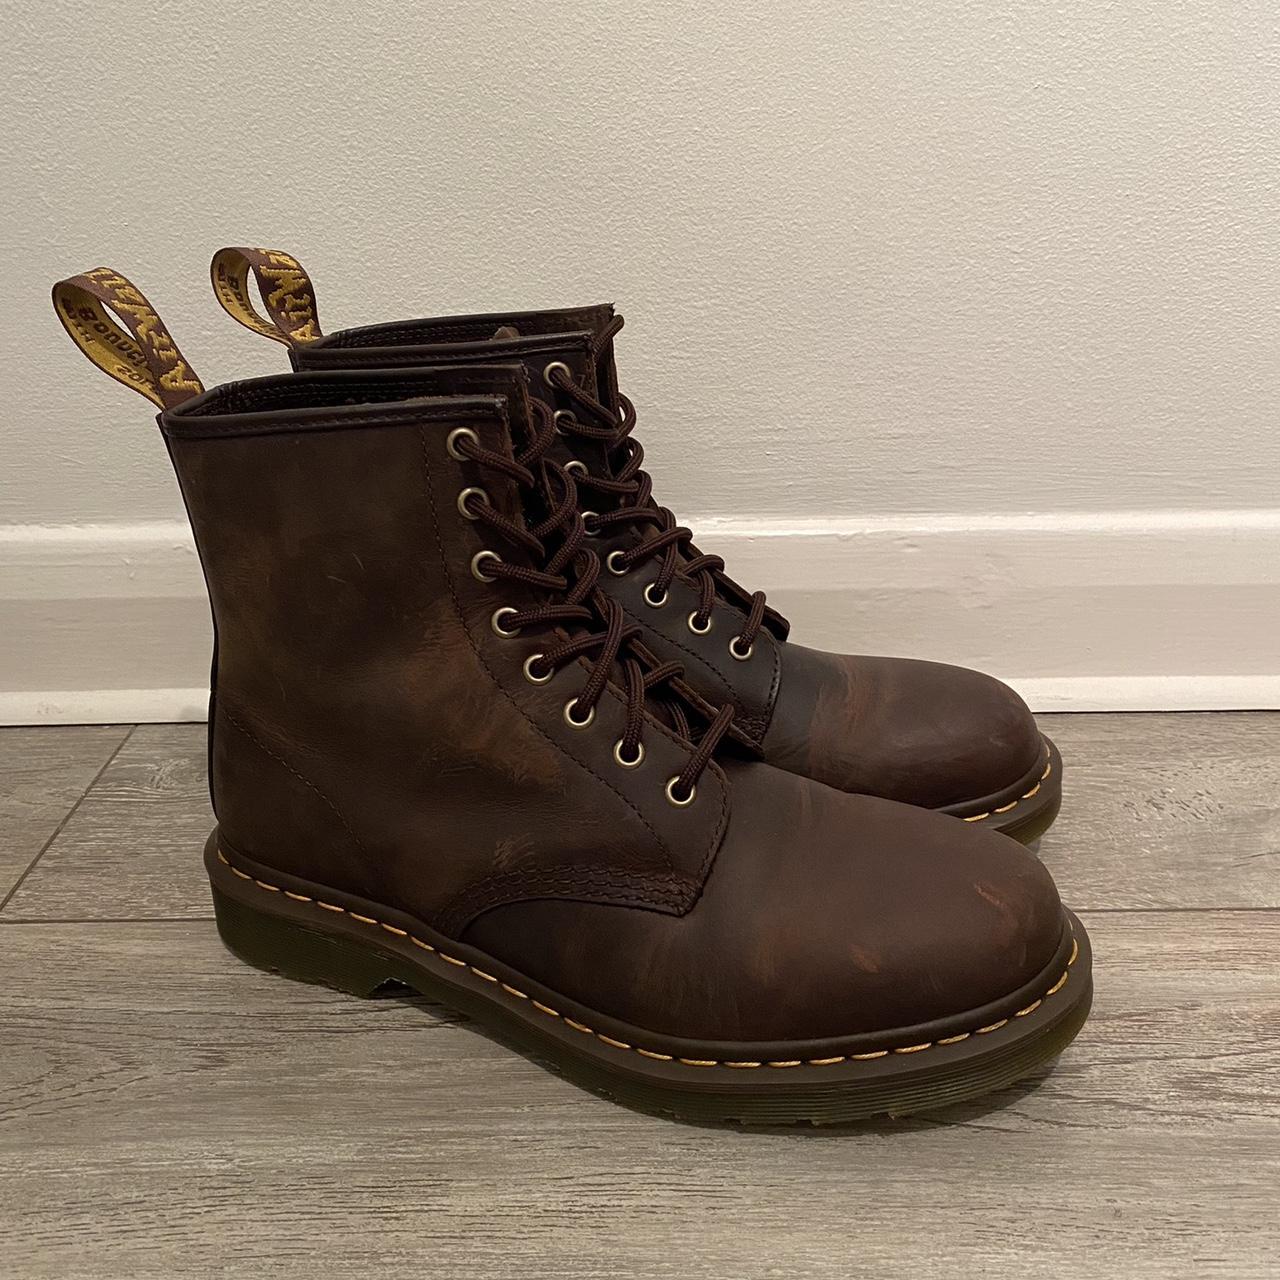 Dr. Martens Men's Brown and Black Boots | Depop